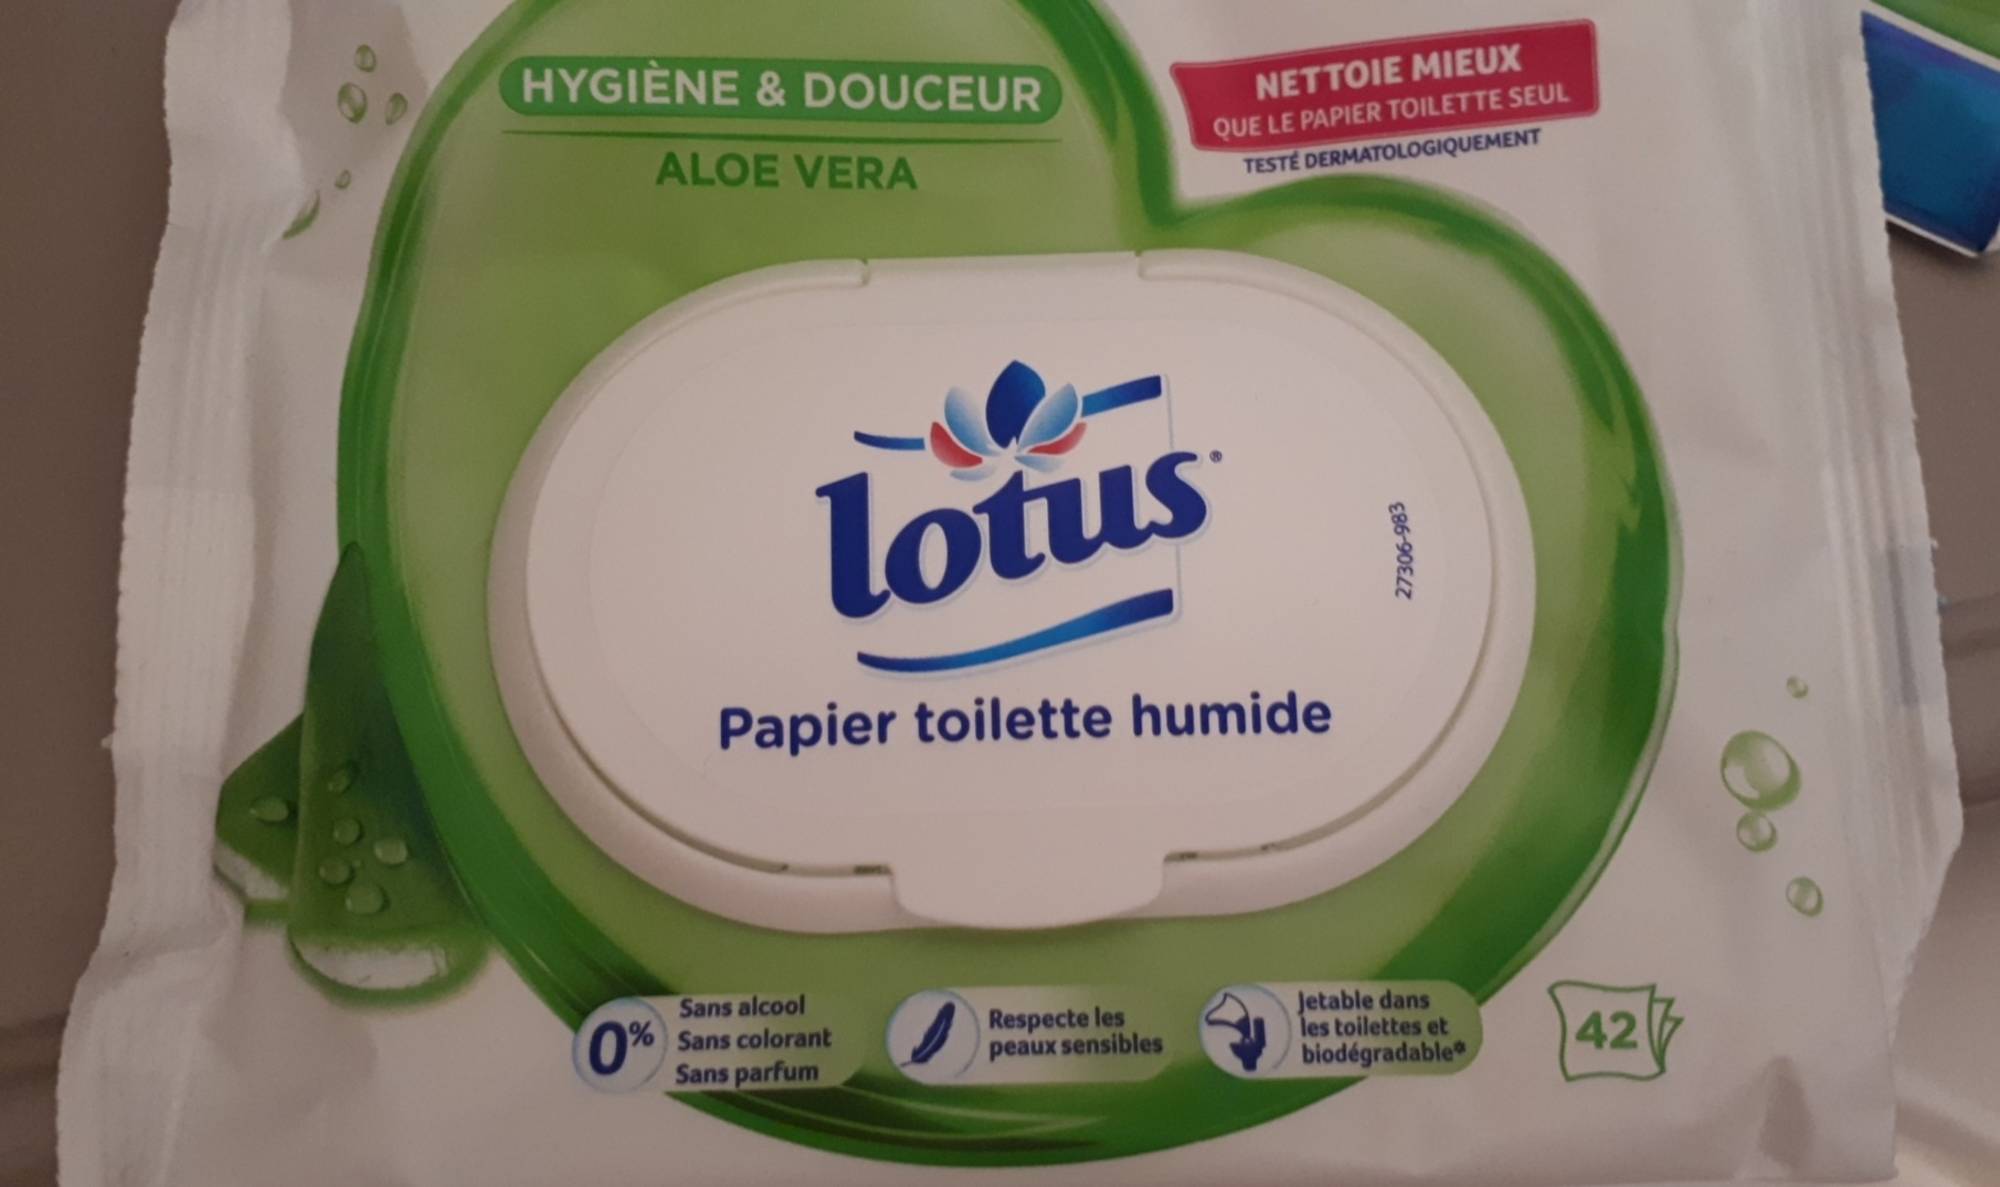 LOTUS - Aloe douceur - Papier toilette humide